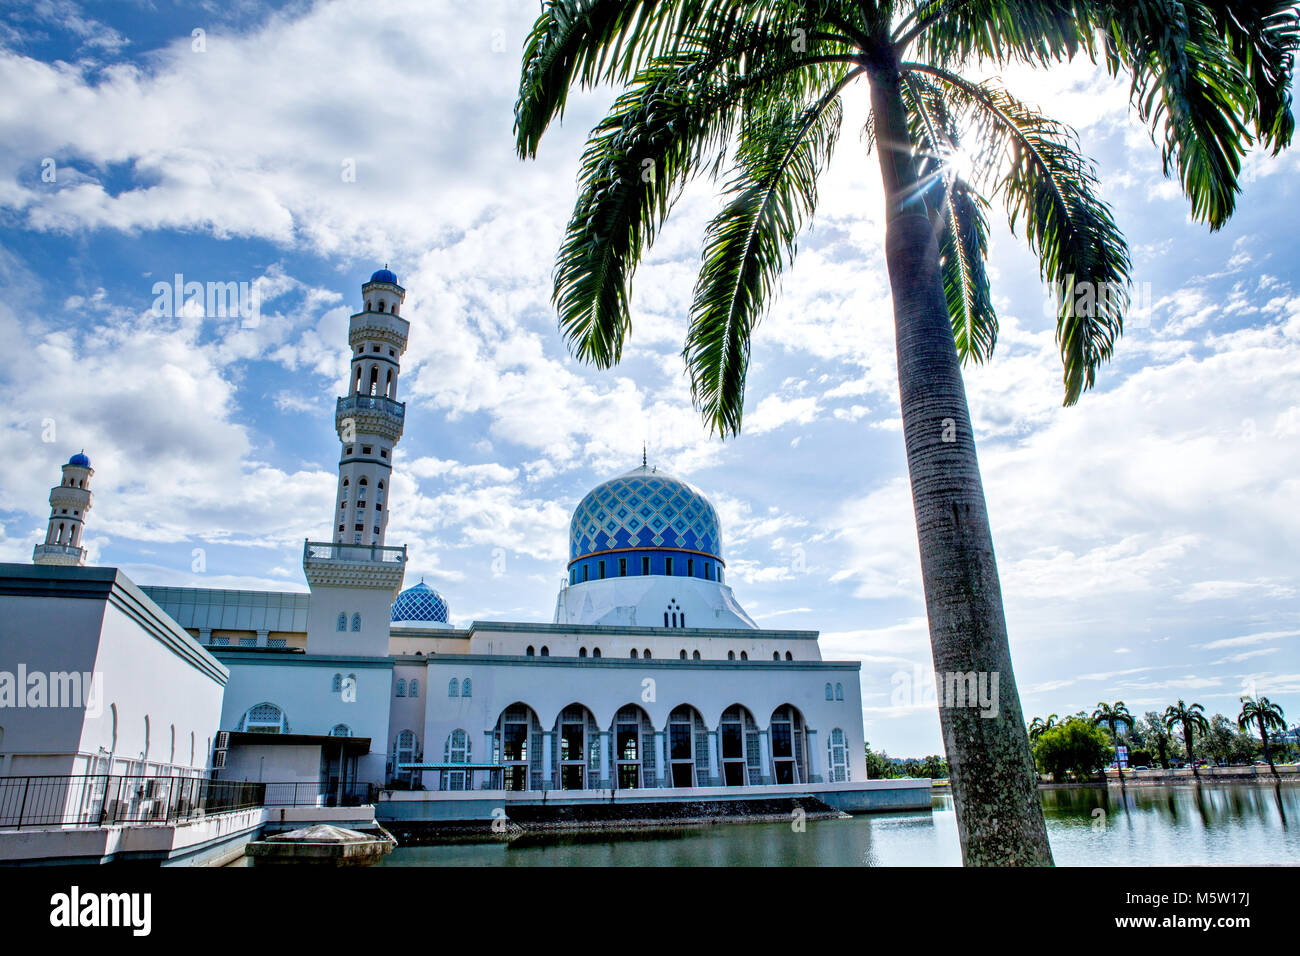 Kota Kinabalu City Mosque, Sabah, Borneo, Malaysia Stock Photo - Alamy